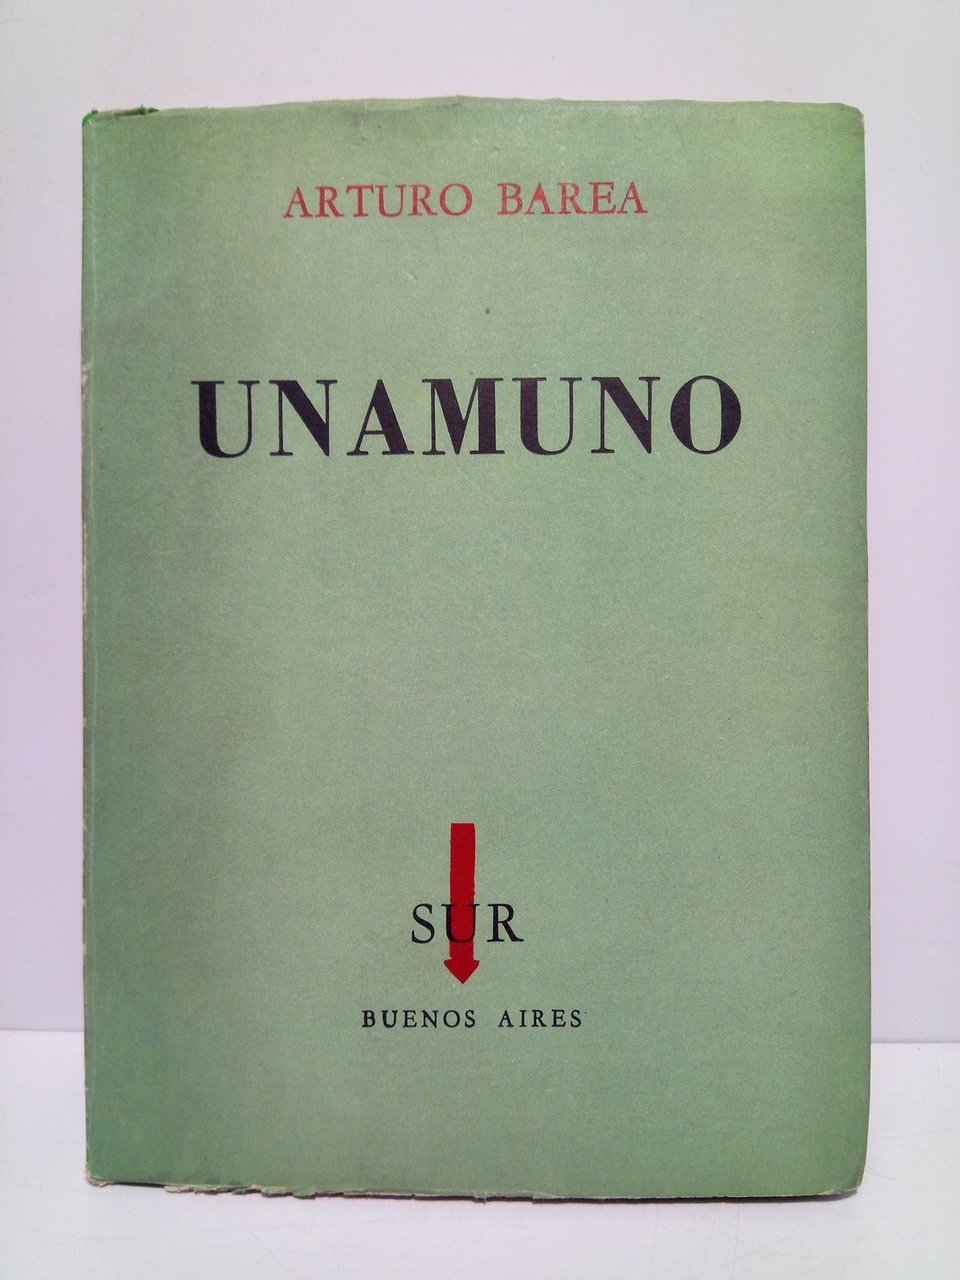 UNAMUNO / Prol. de Ilsa Barea; Traducción del inglés por …